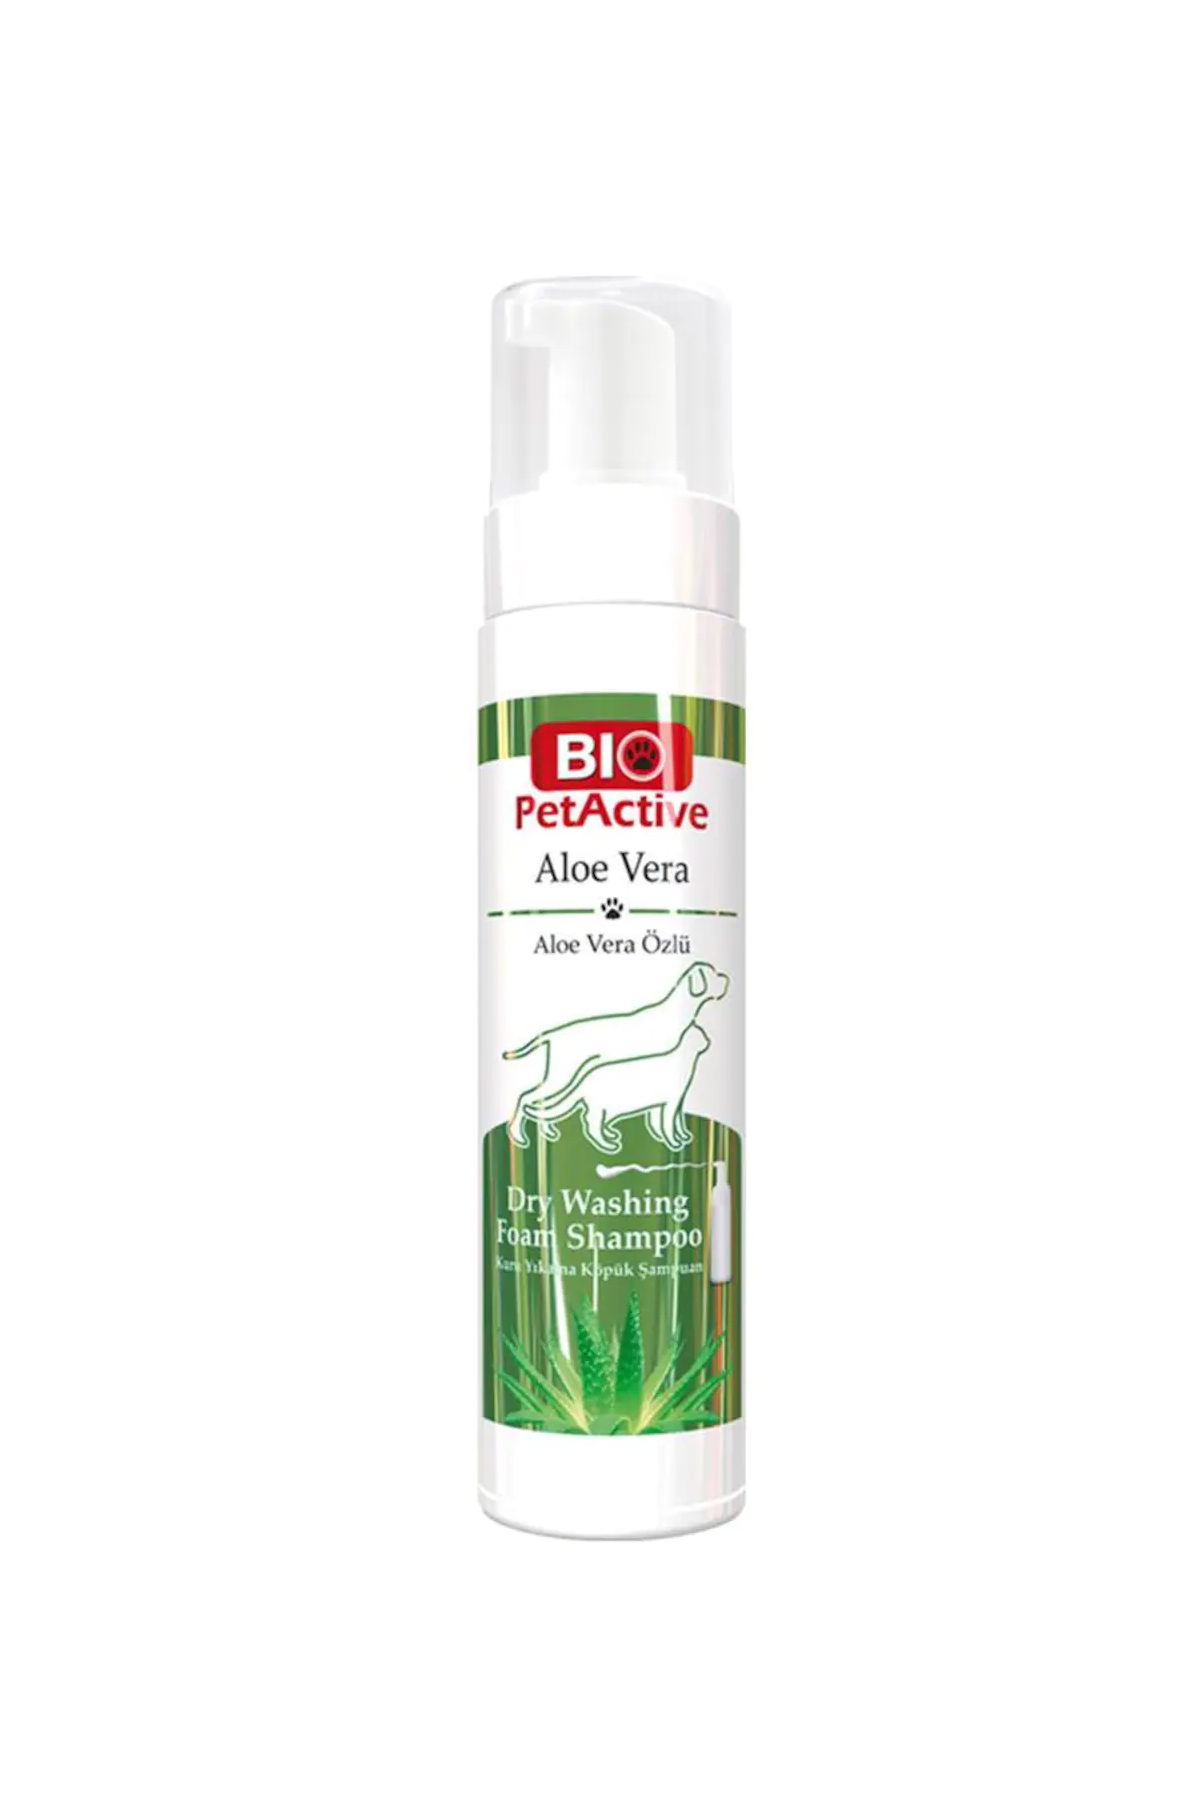 Bio Petactive Aloe Vera Köpek Şampuanı Kuru Yıkama Köpük Şampuan 200 ml